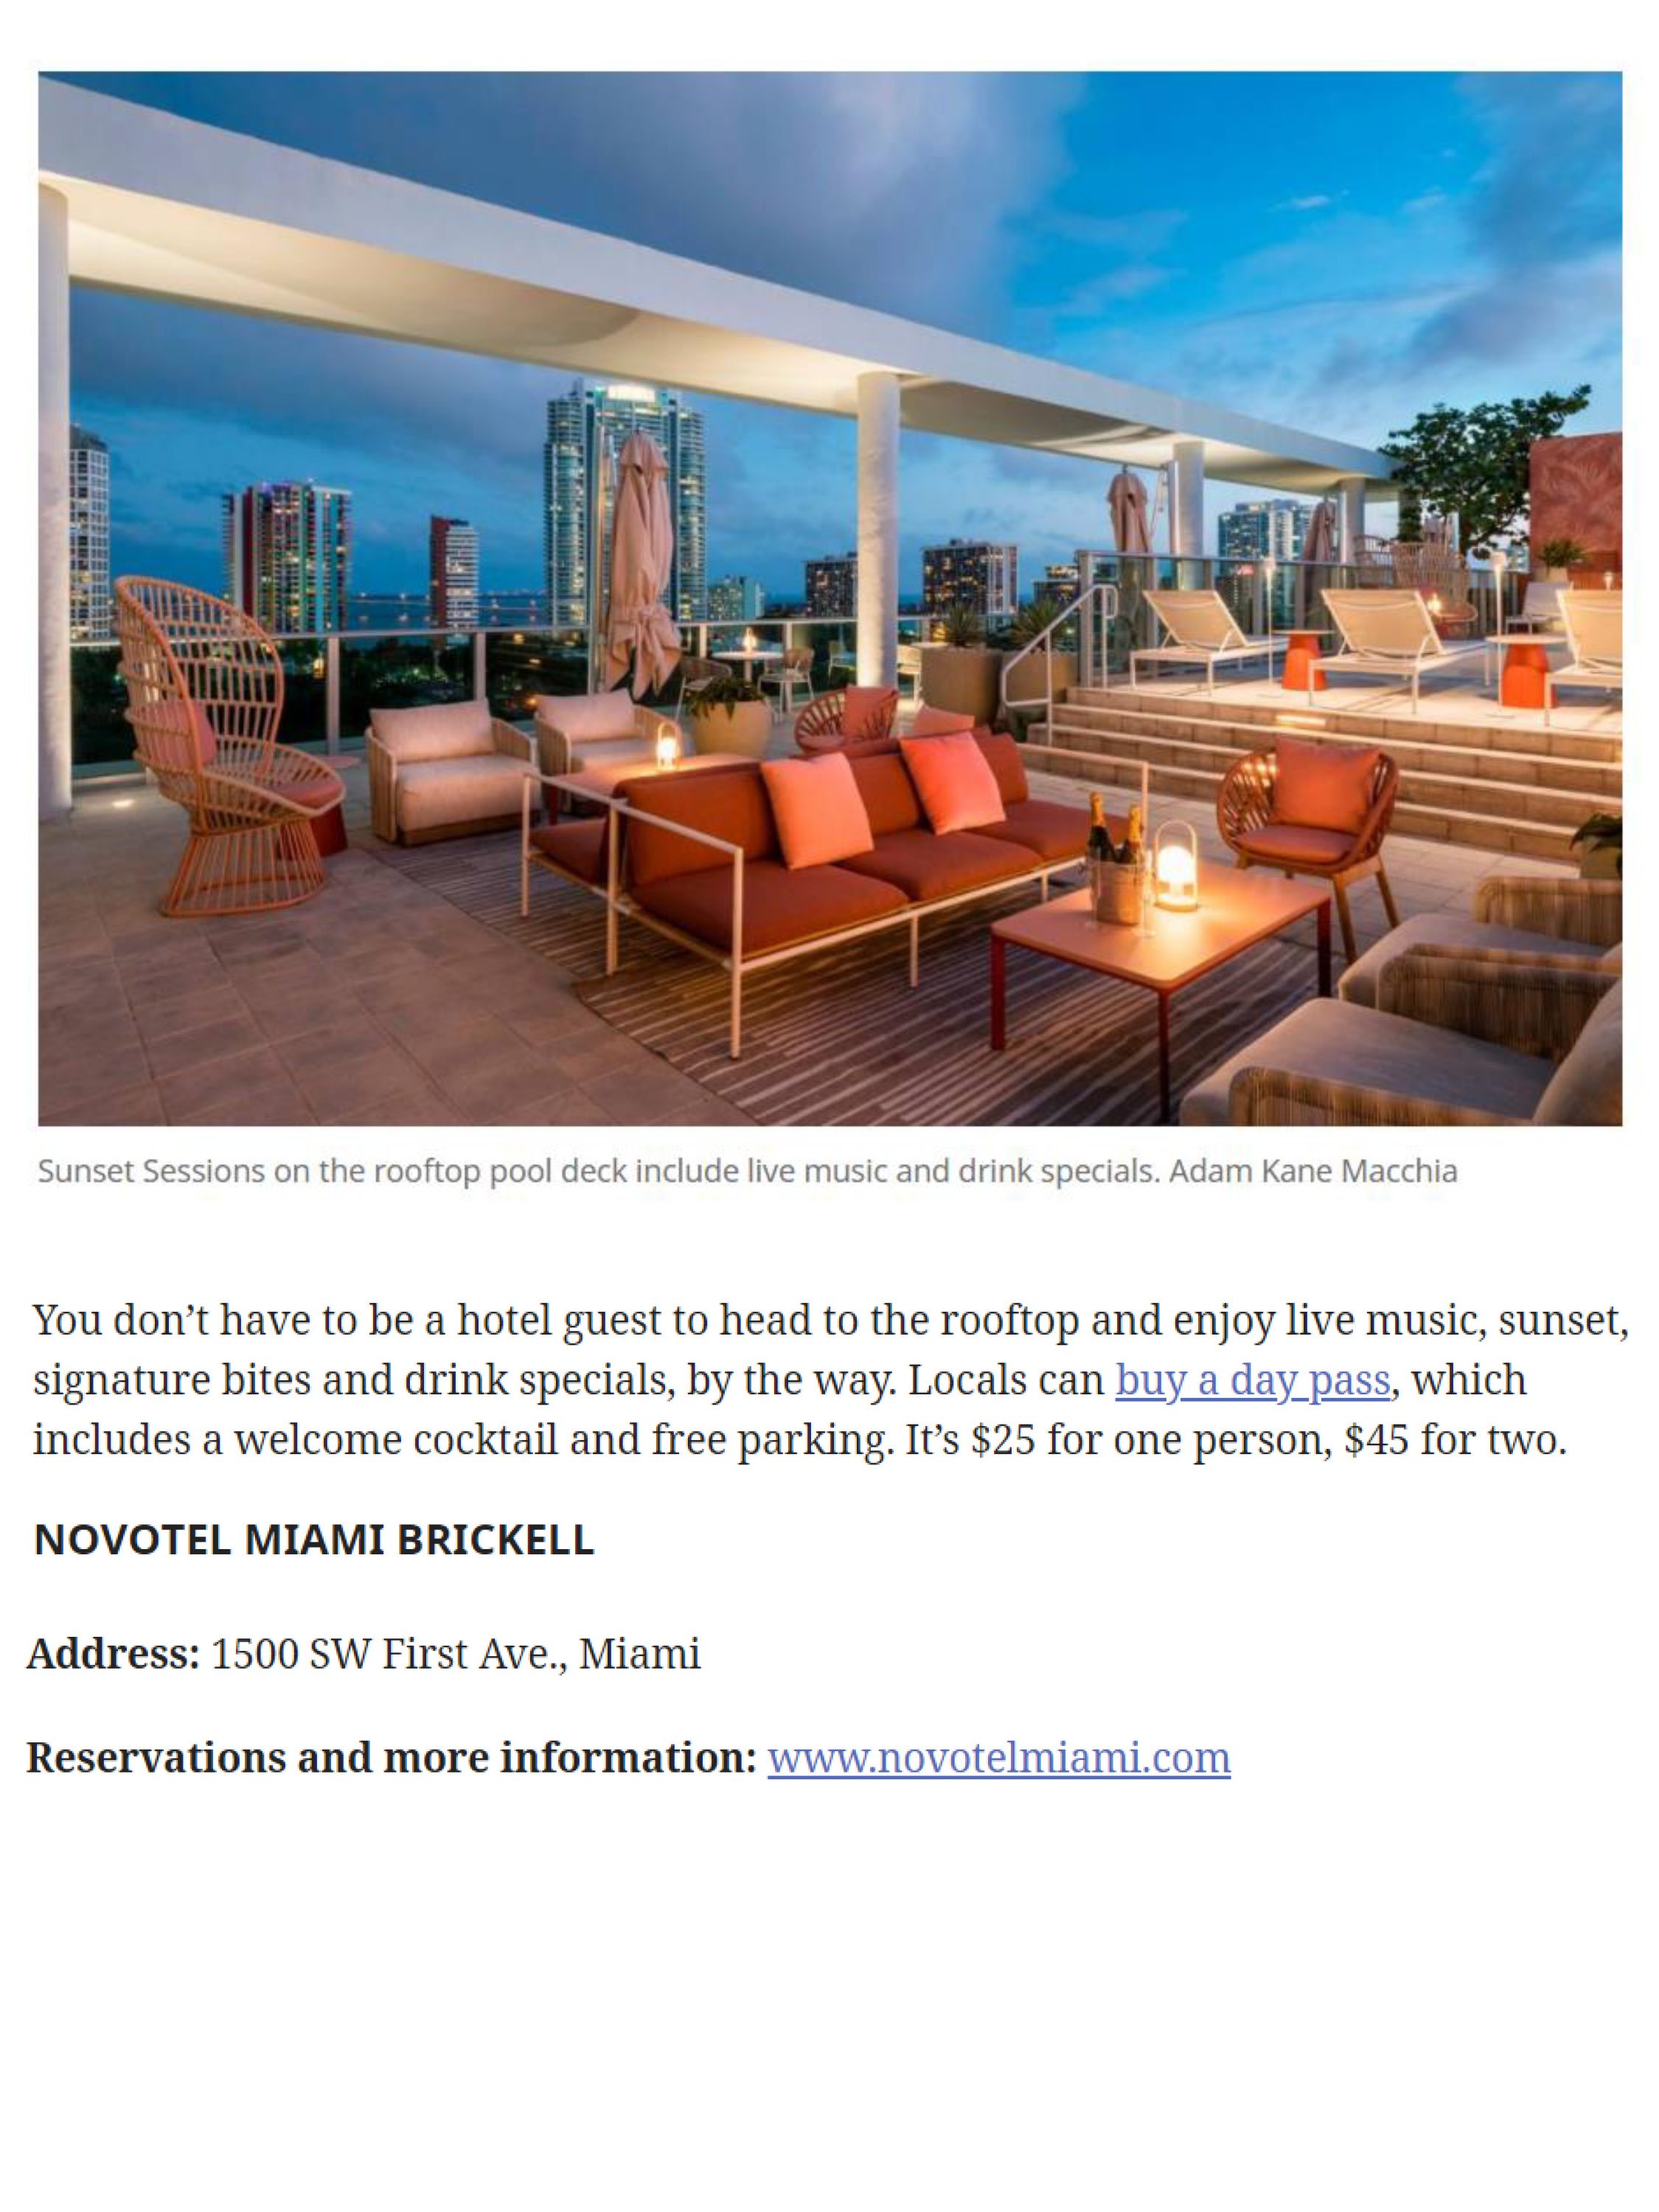 Miami Herald - Novotel Miami Hotel Coverage (3.30.21)_Page_3.jpg